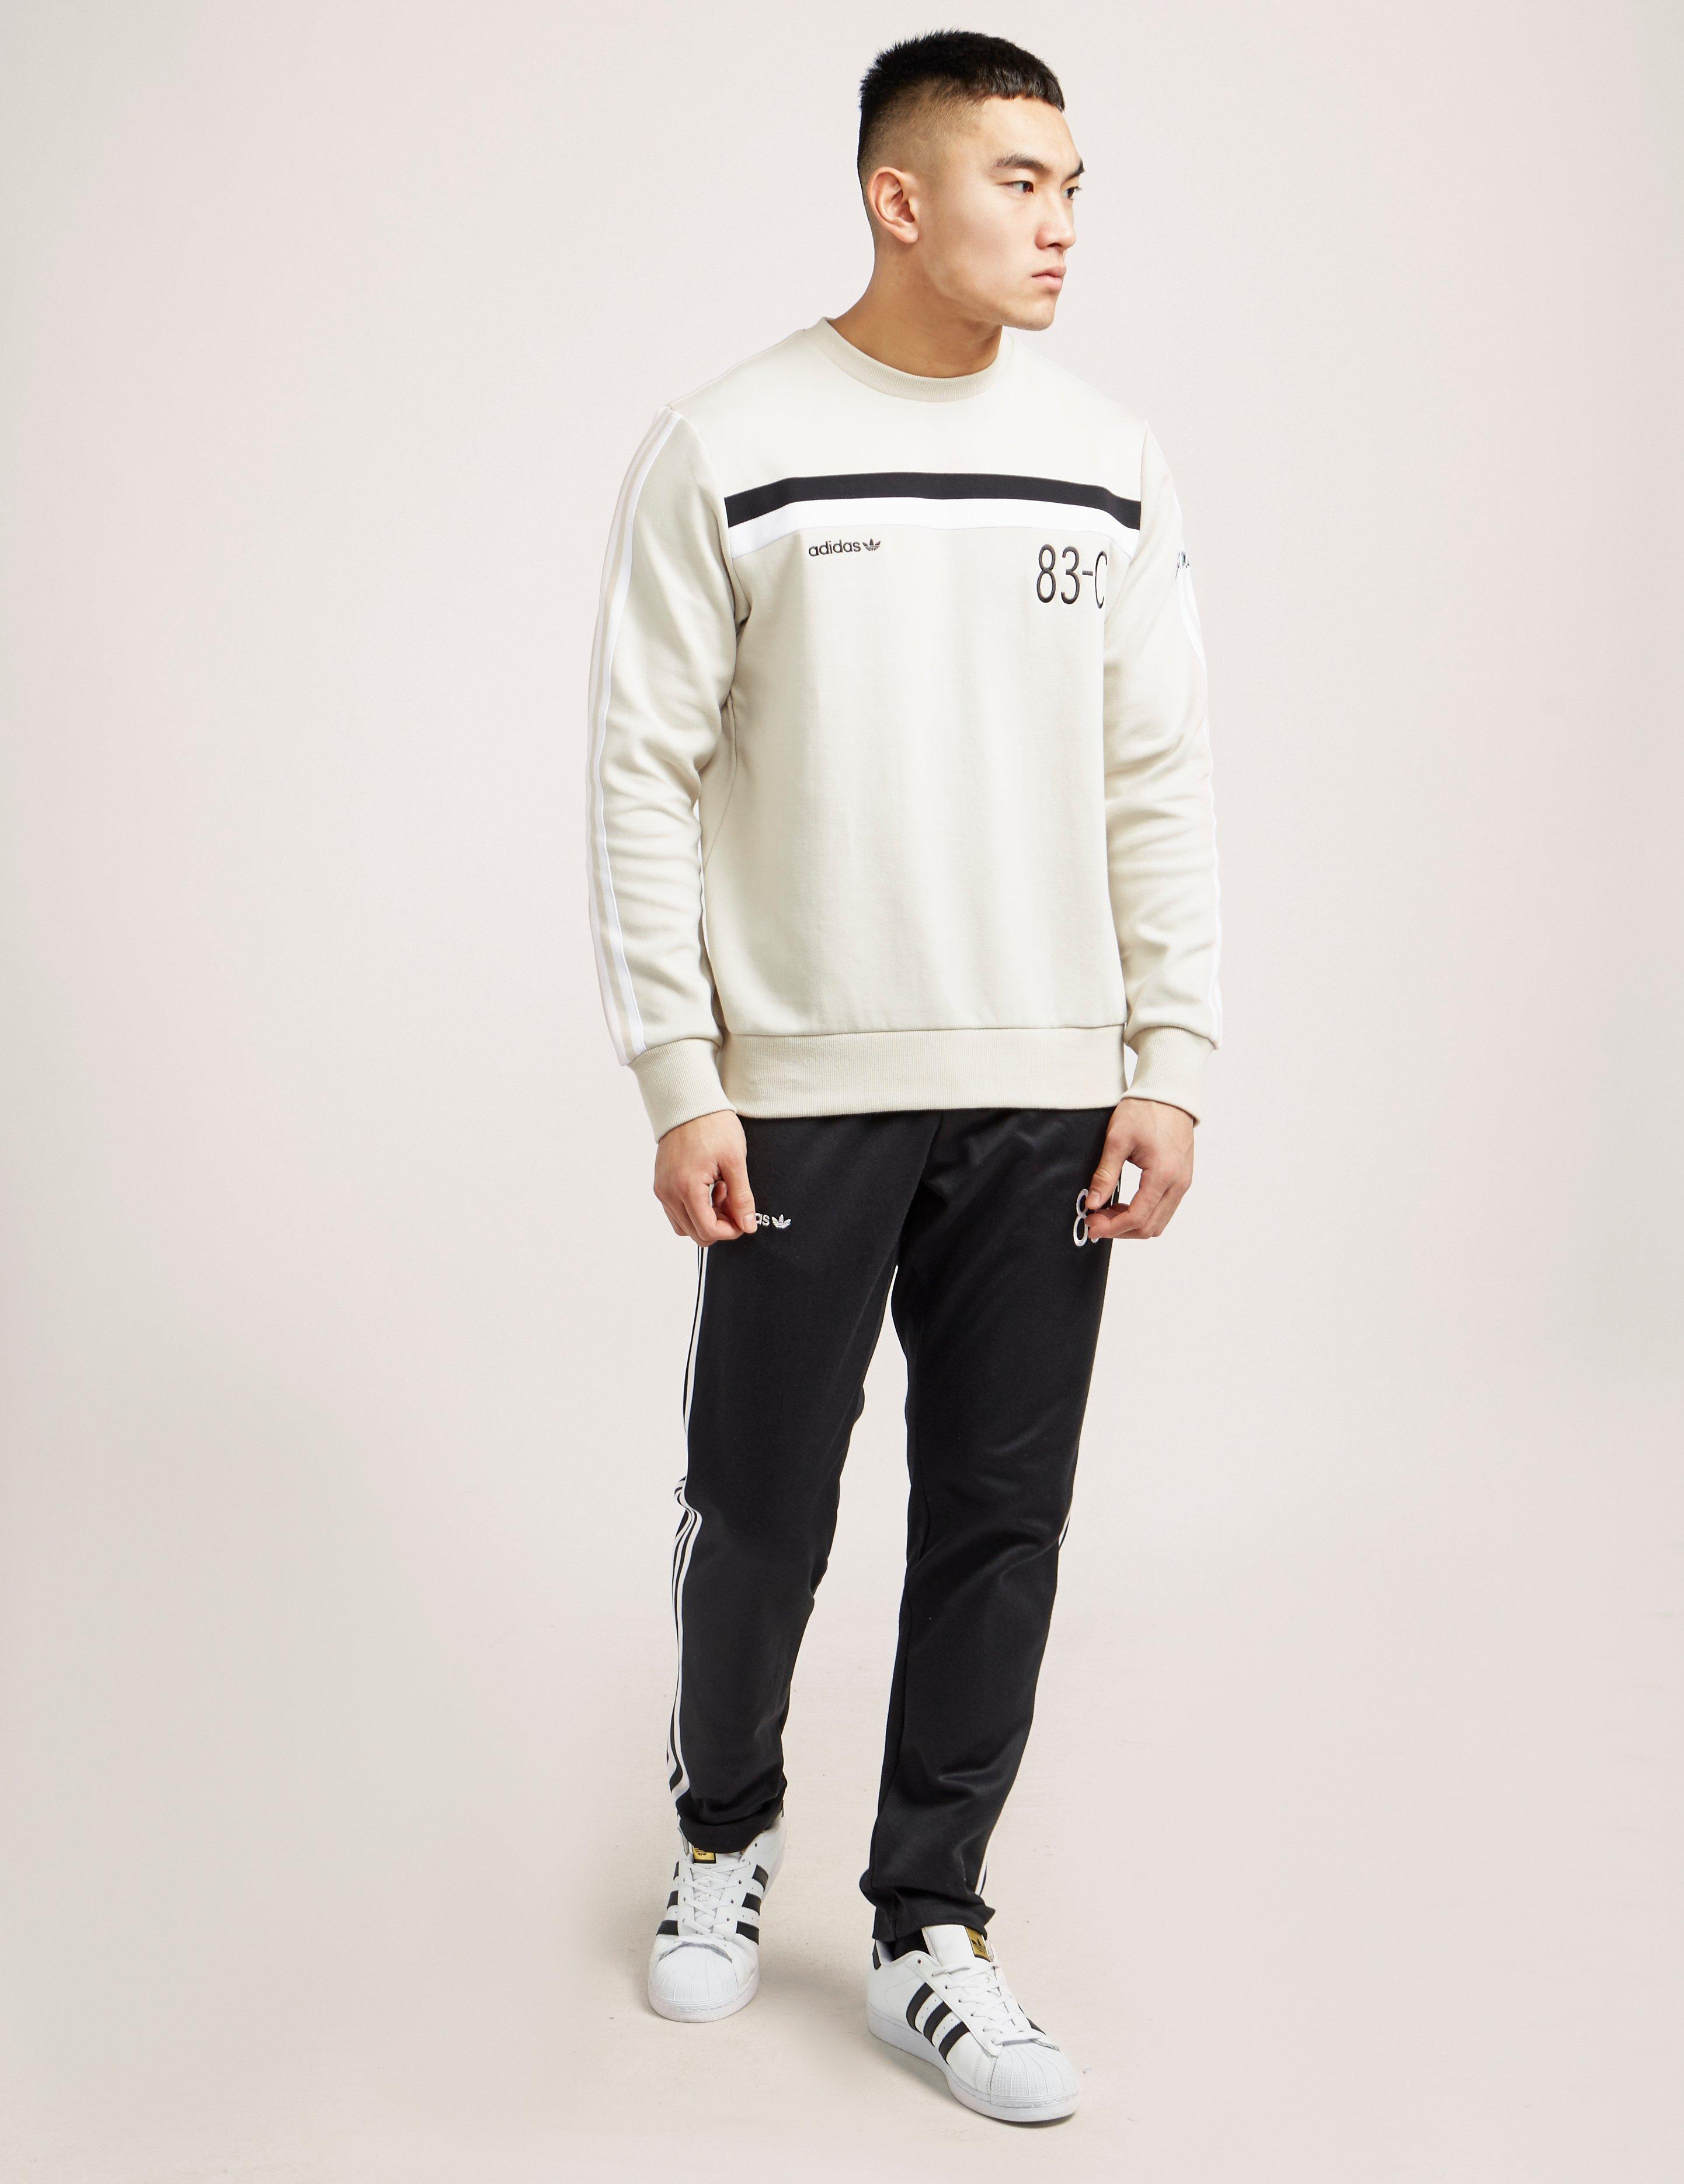 Adidas originals 83-c Crew Sweatshirt in White for Men | Lyst